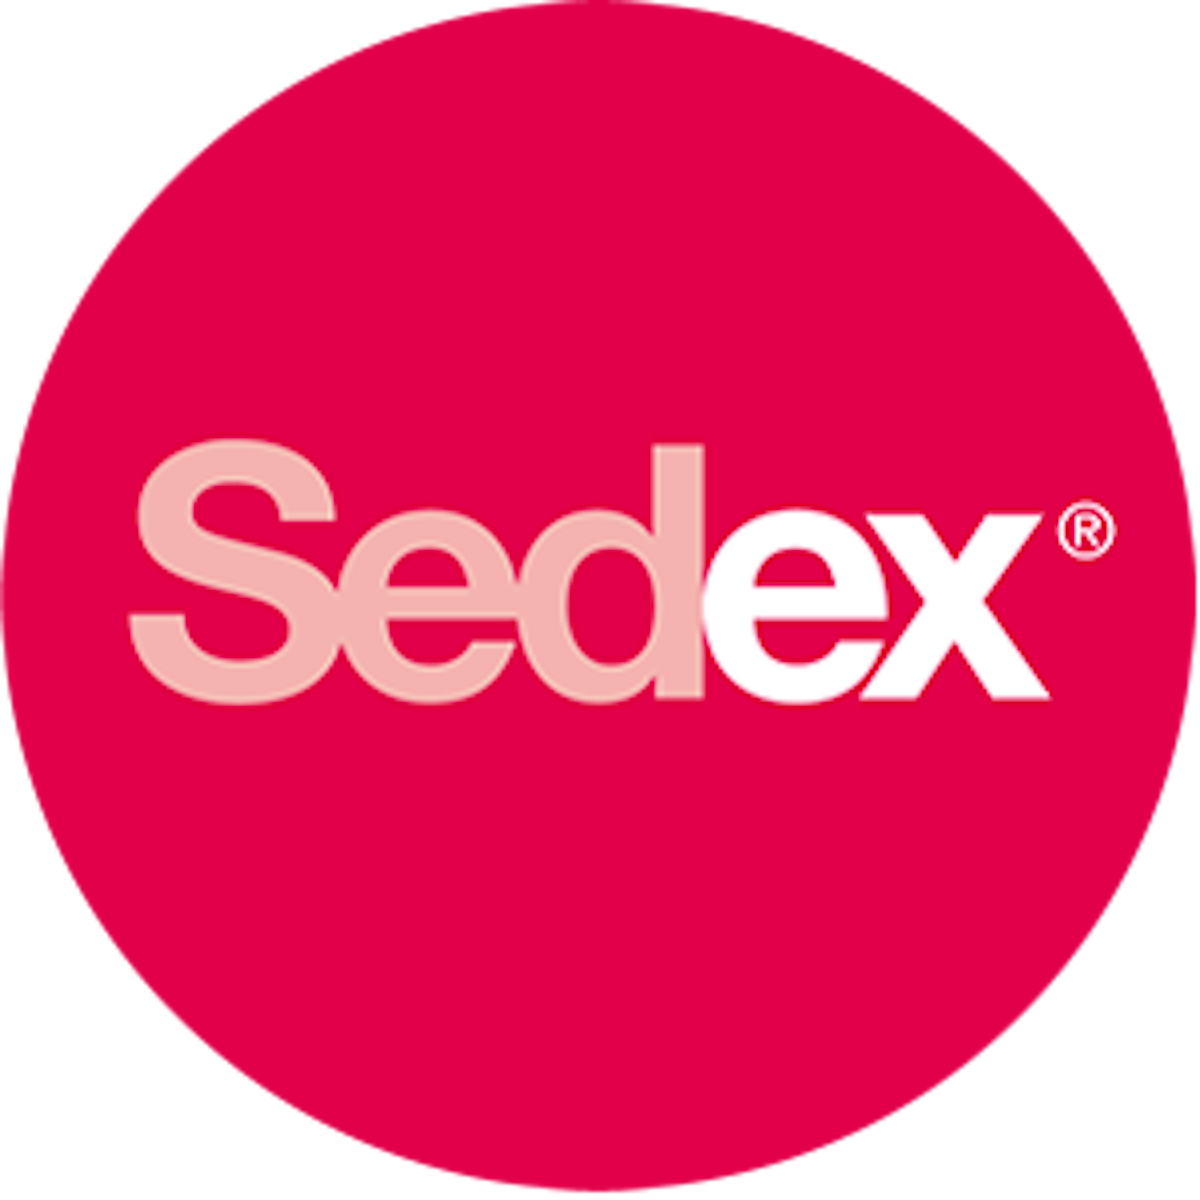 Sedex certification